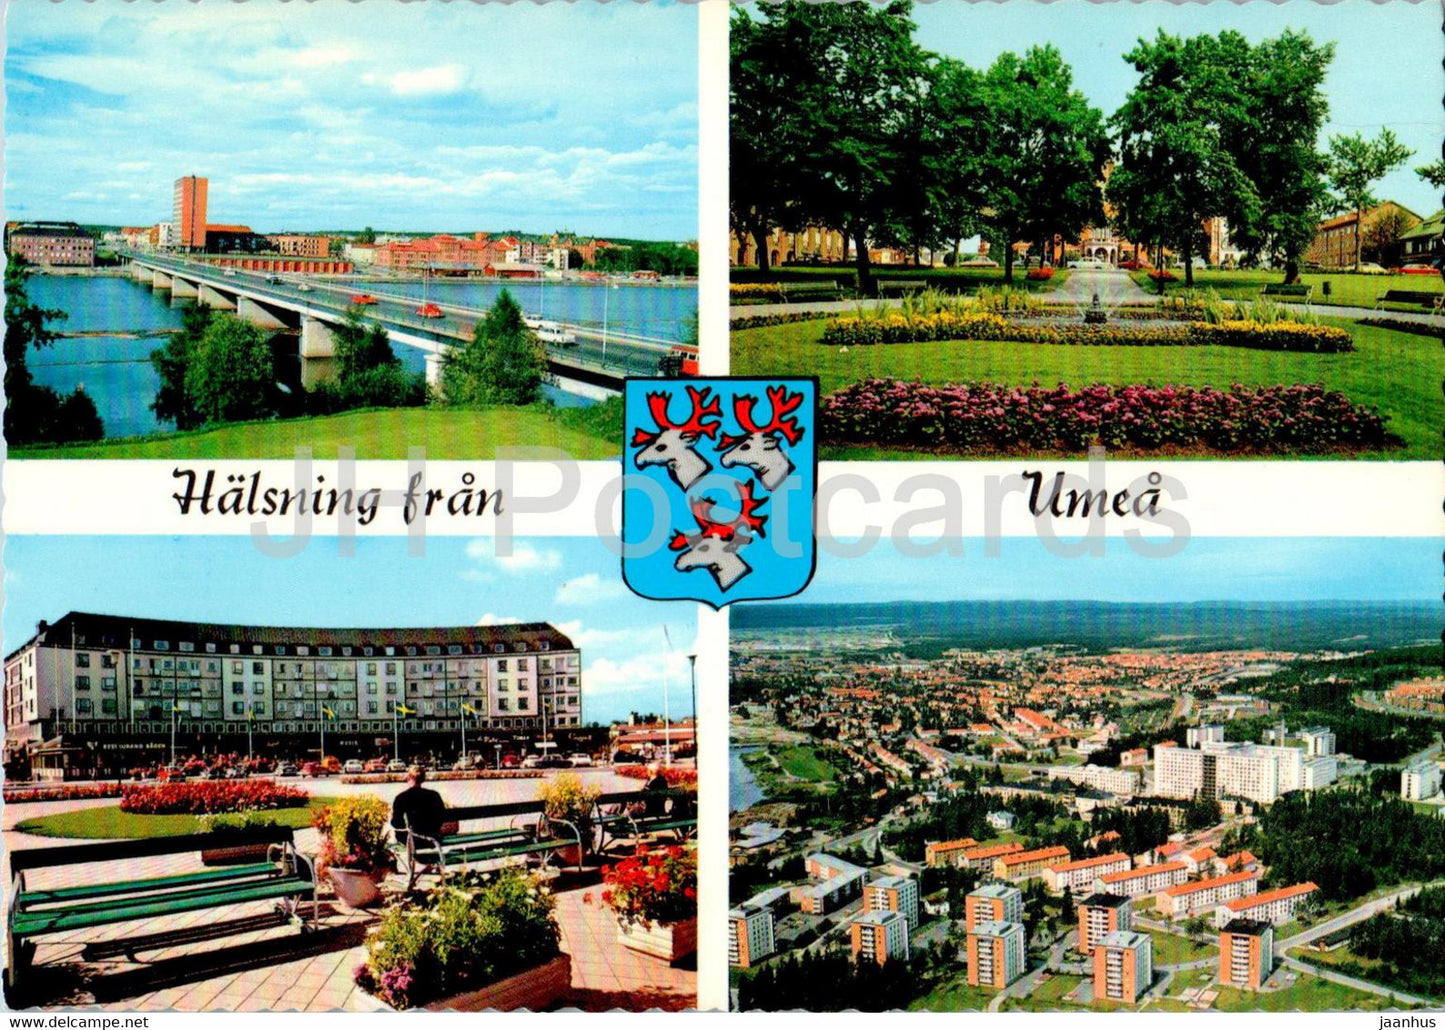 Halsning fran Umea - multiview - 440 - Sweden - unused - JH Postcards